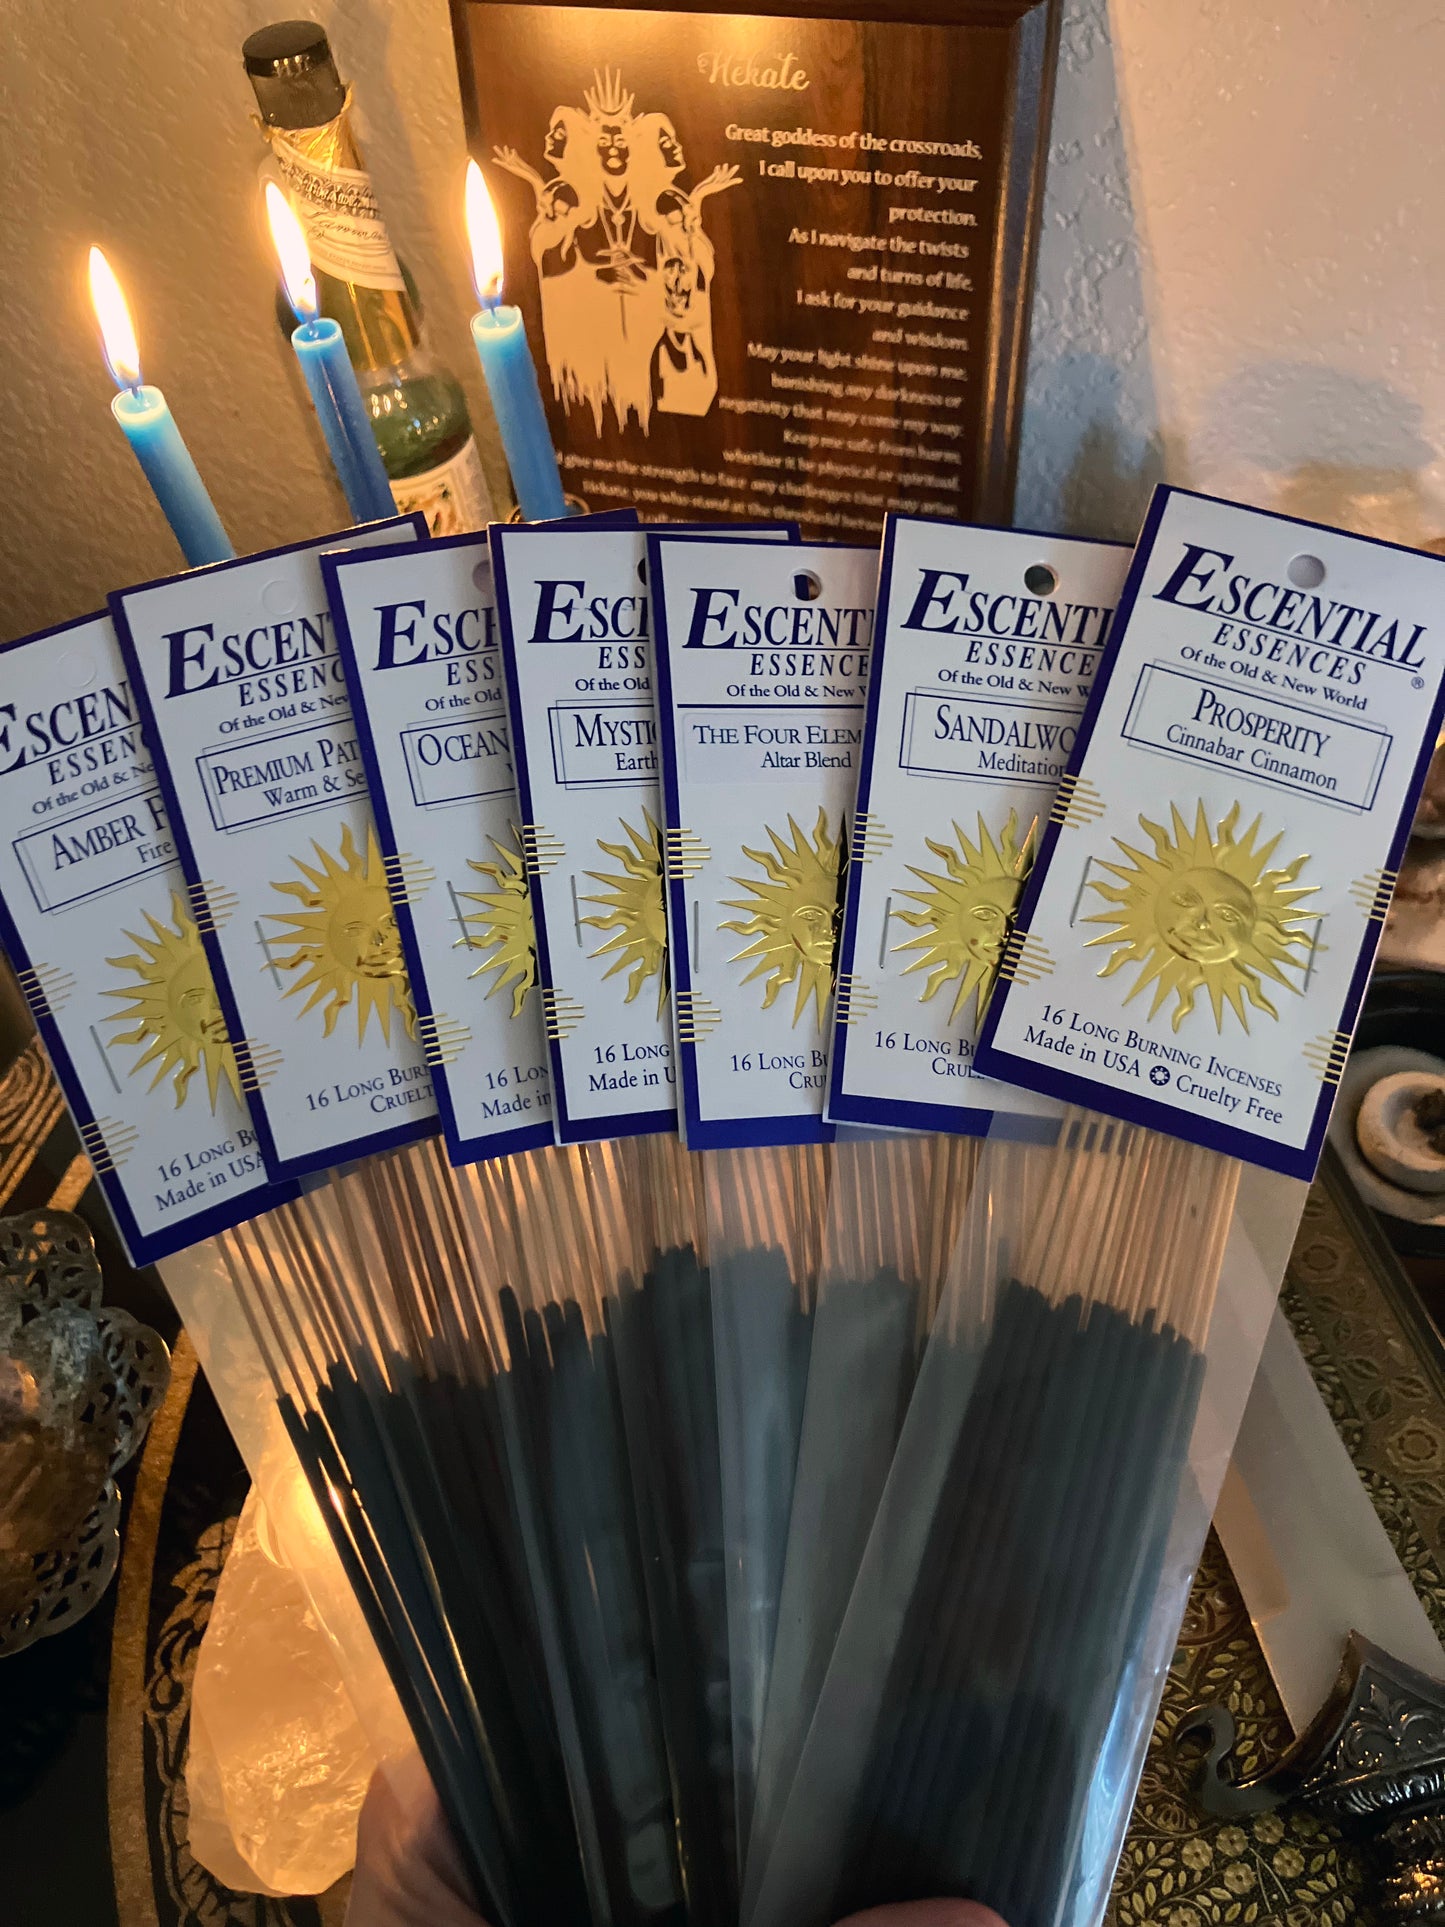 Rain Goddess Escential Essences Incense Sticks 16 pack